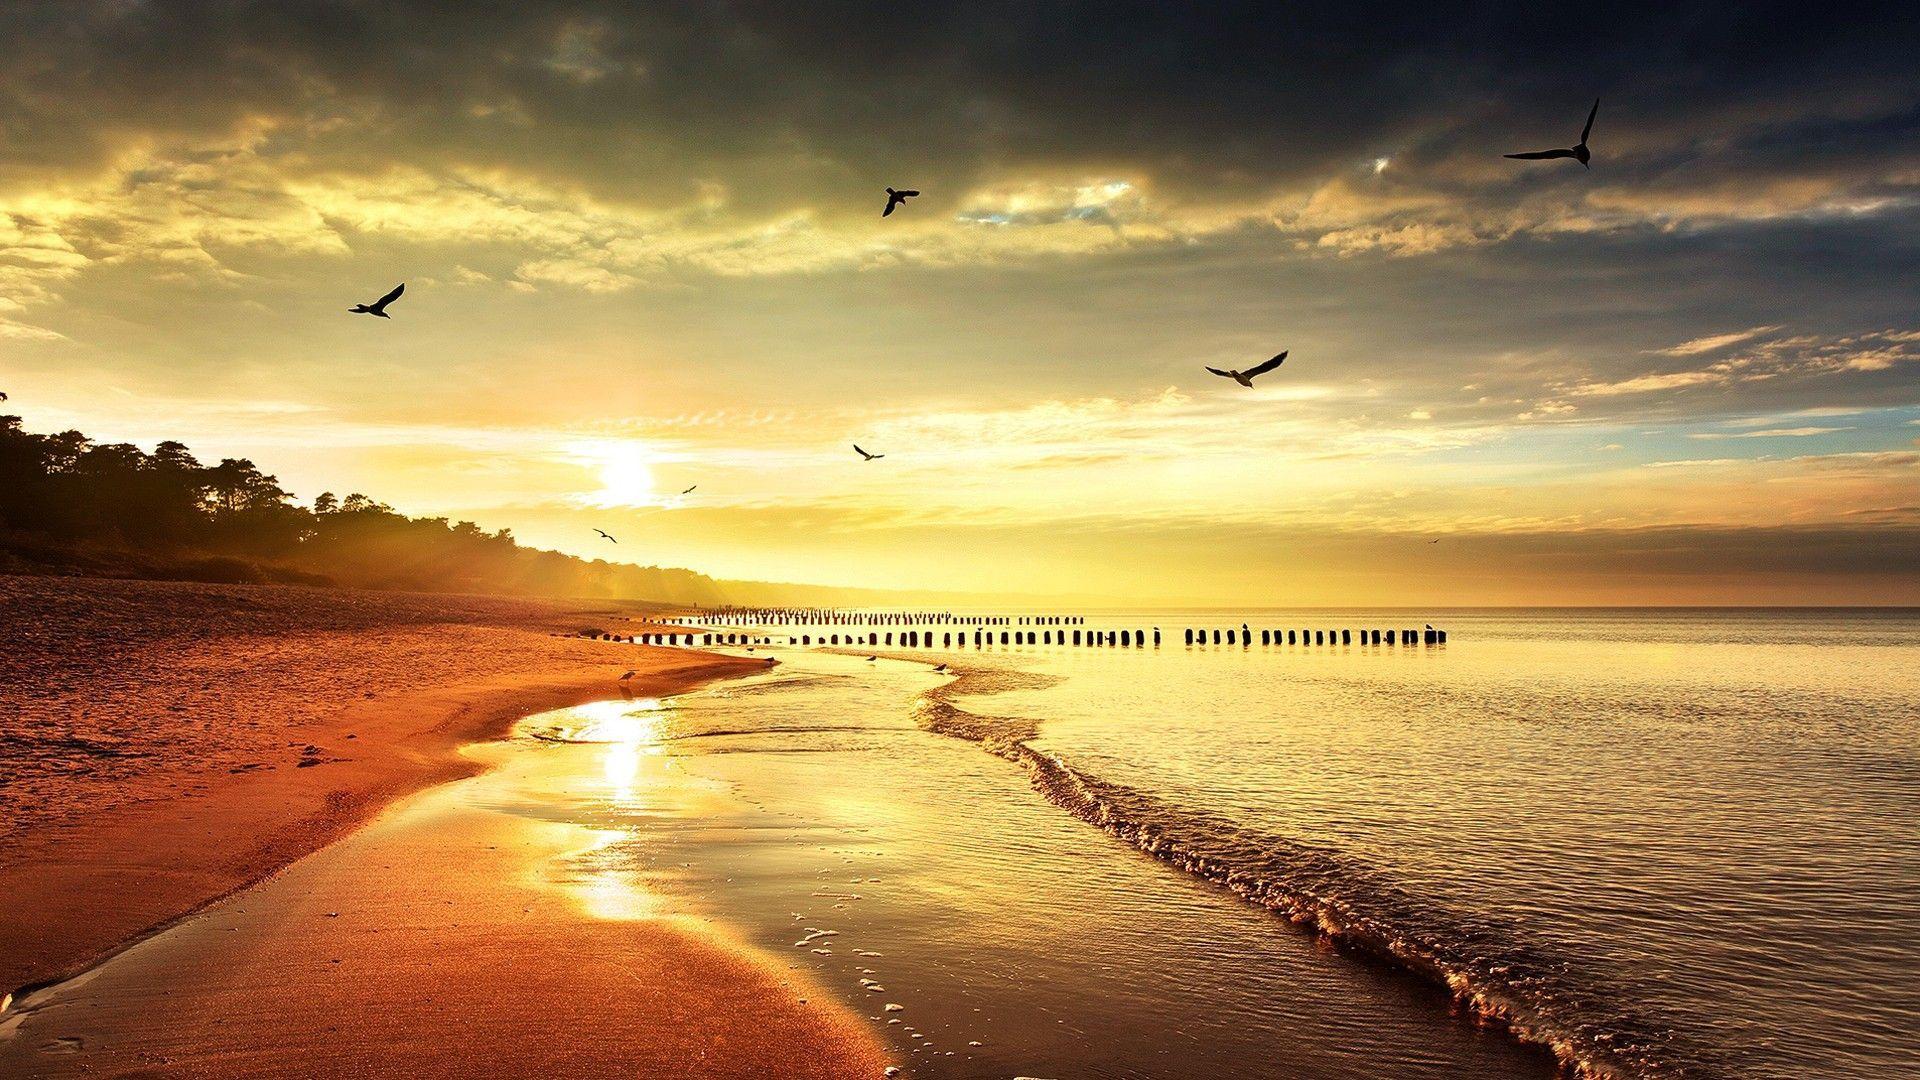 Wallpaper For > Beach Sunset Desktop Wallpaper